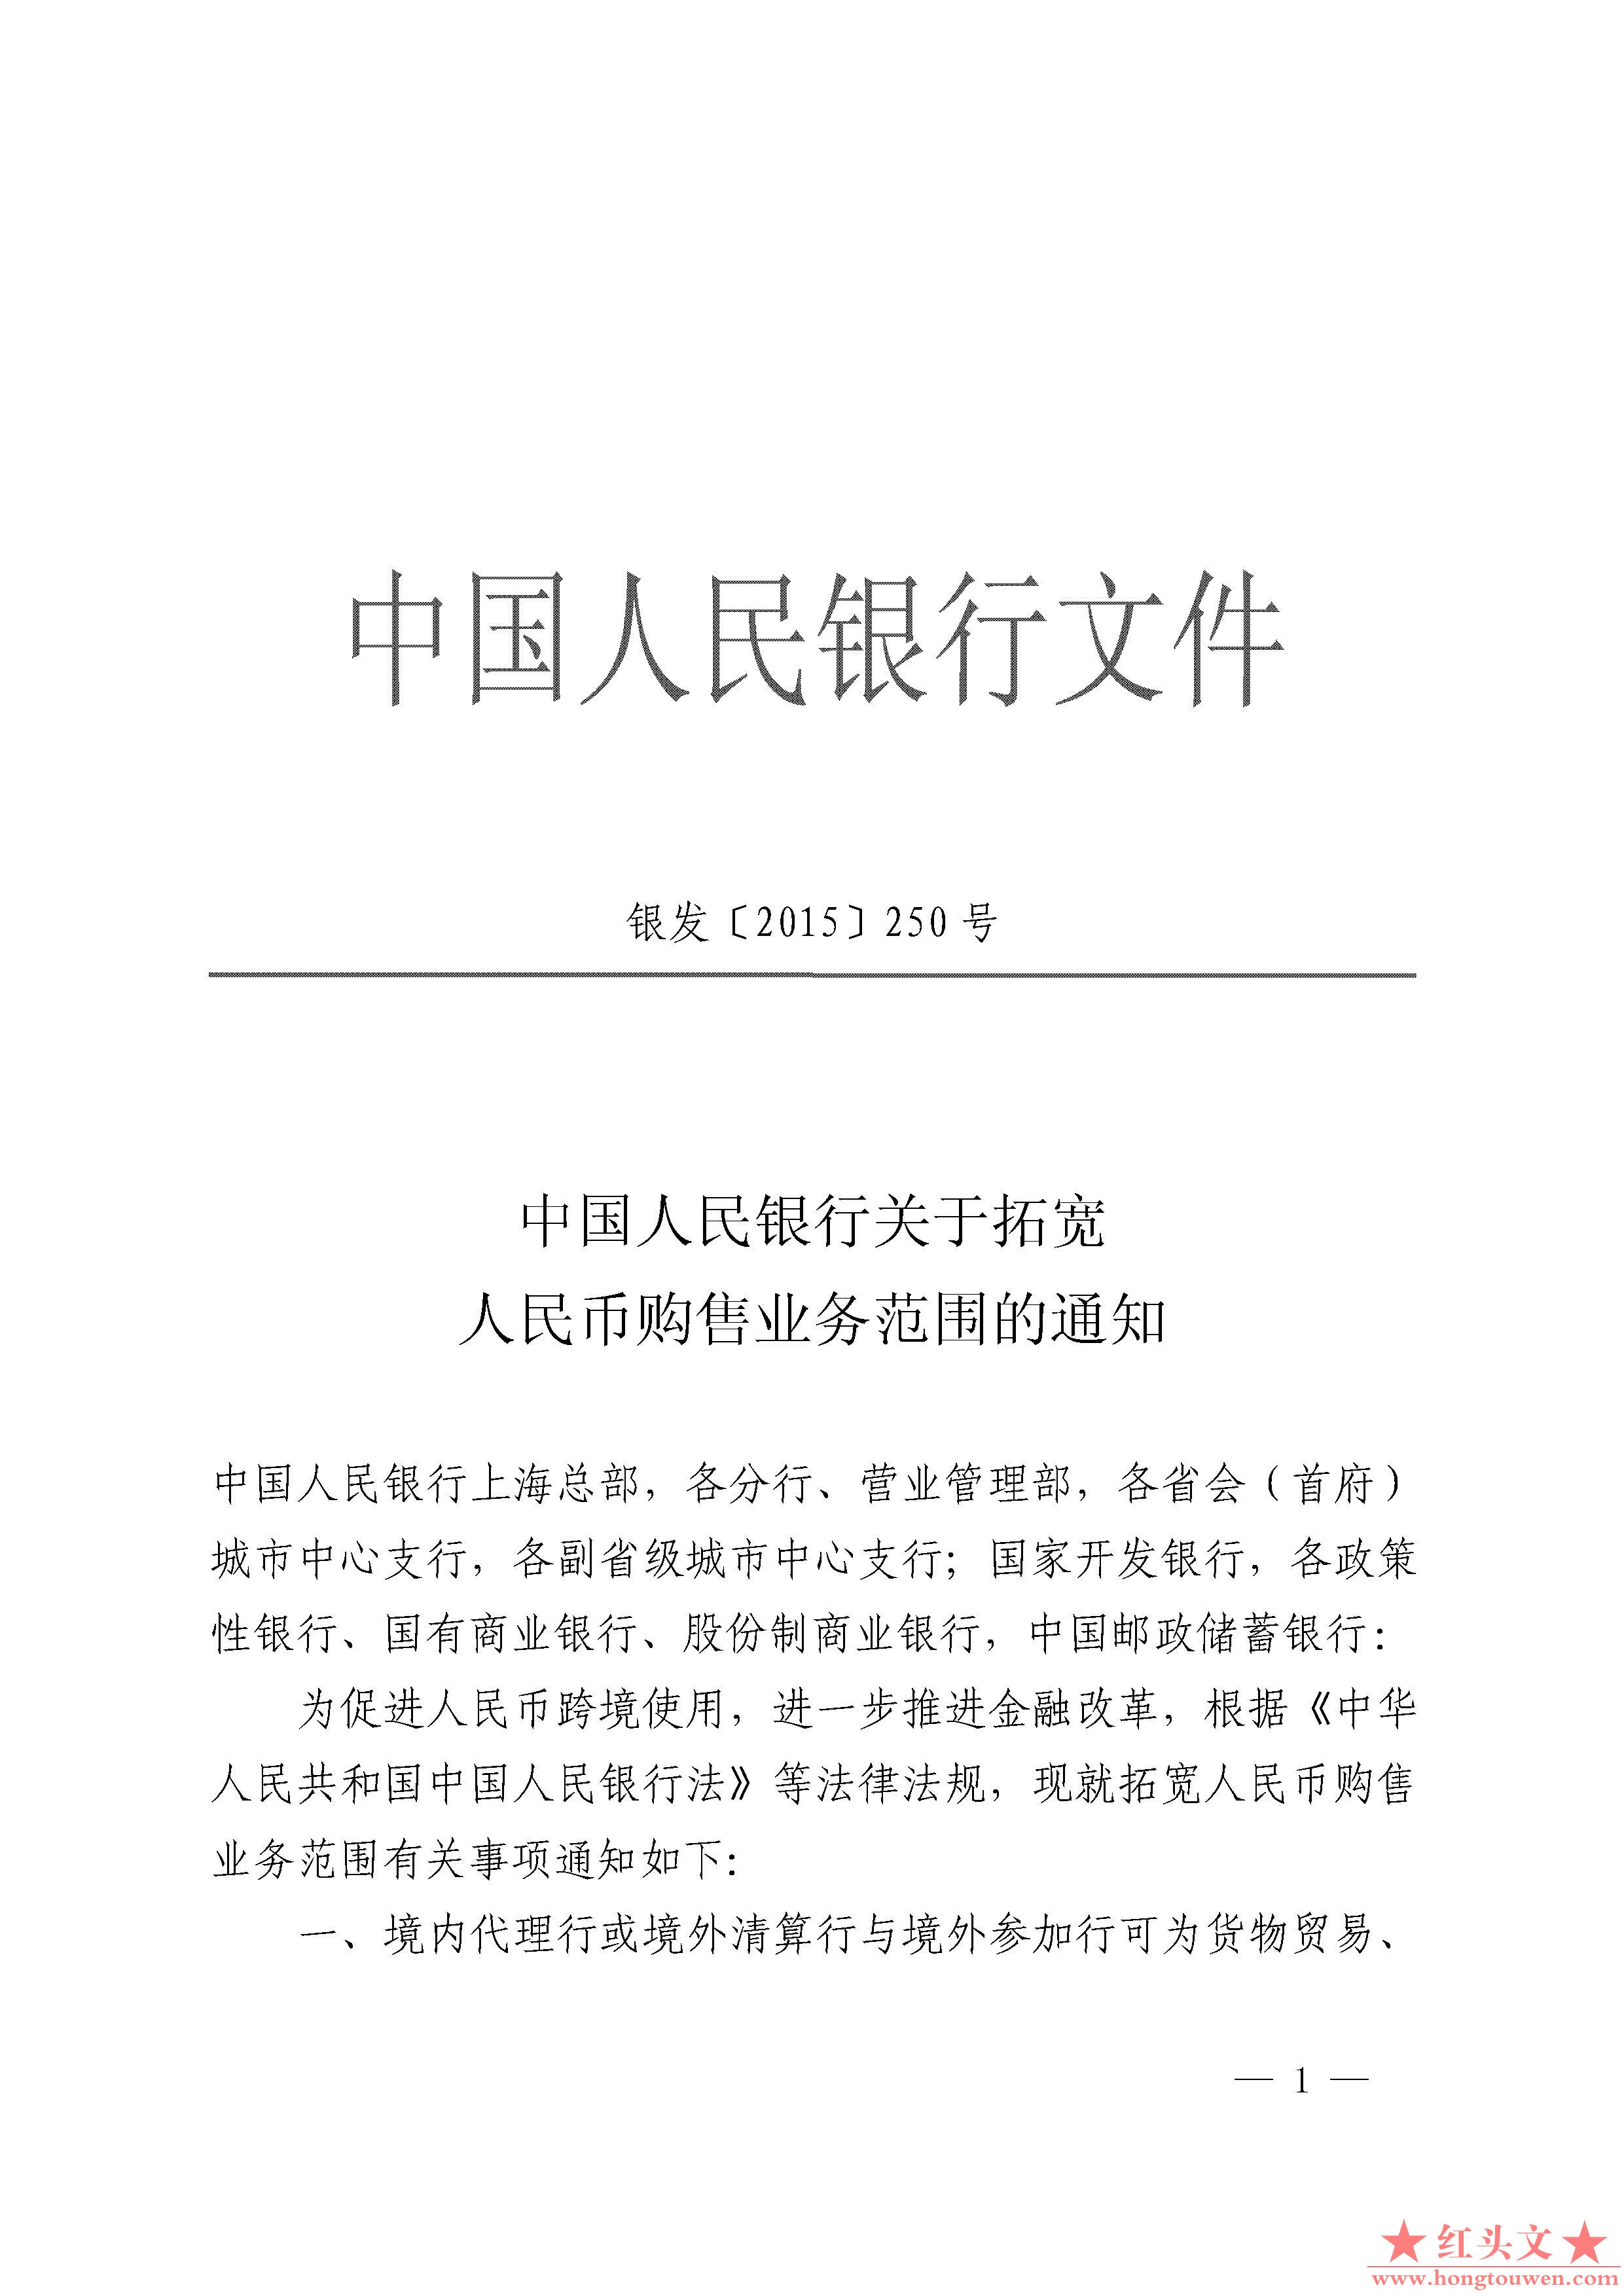 银发[2015]250号-中国人民银行关于拓宽人民币购售业务范围的通知_页面_1.jpg.jpg